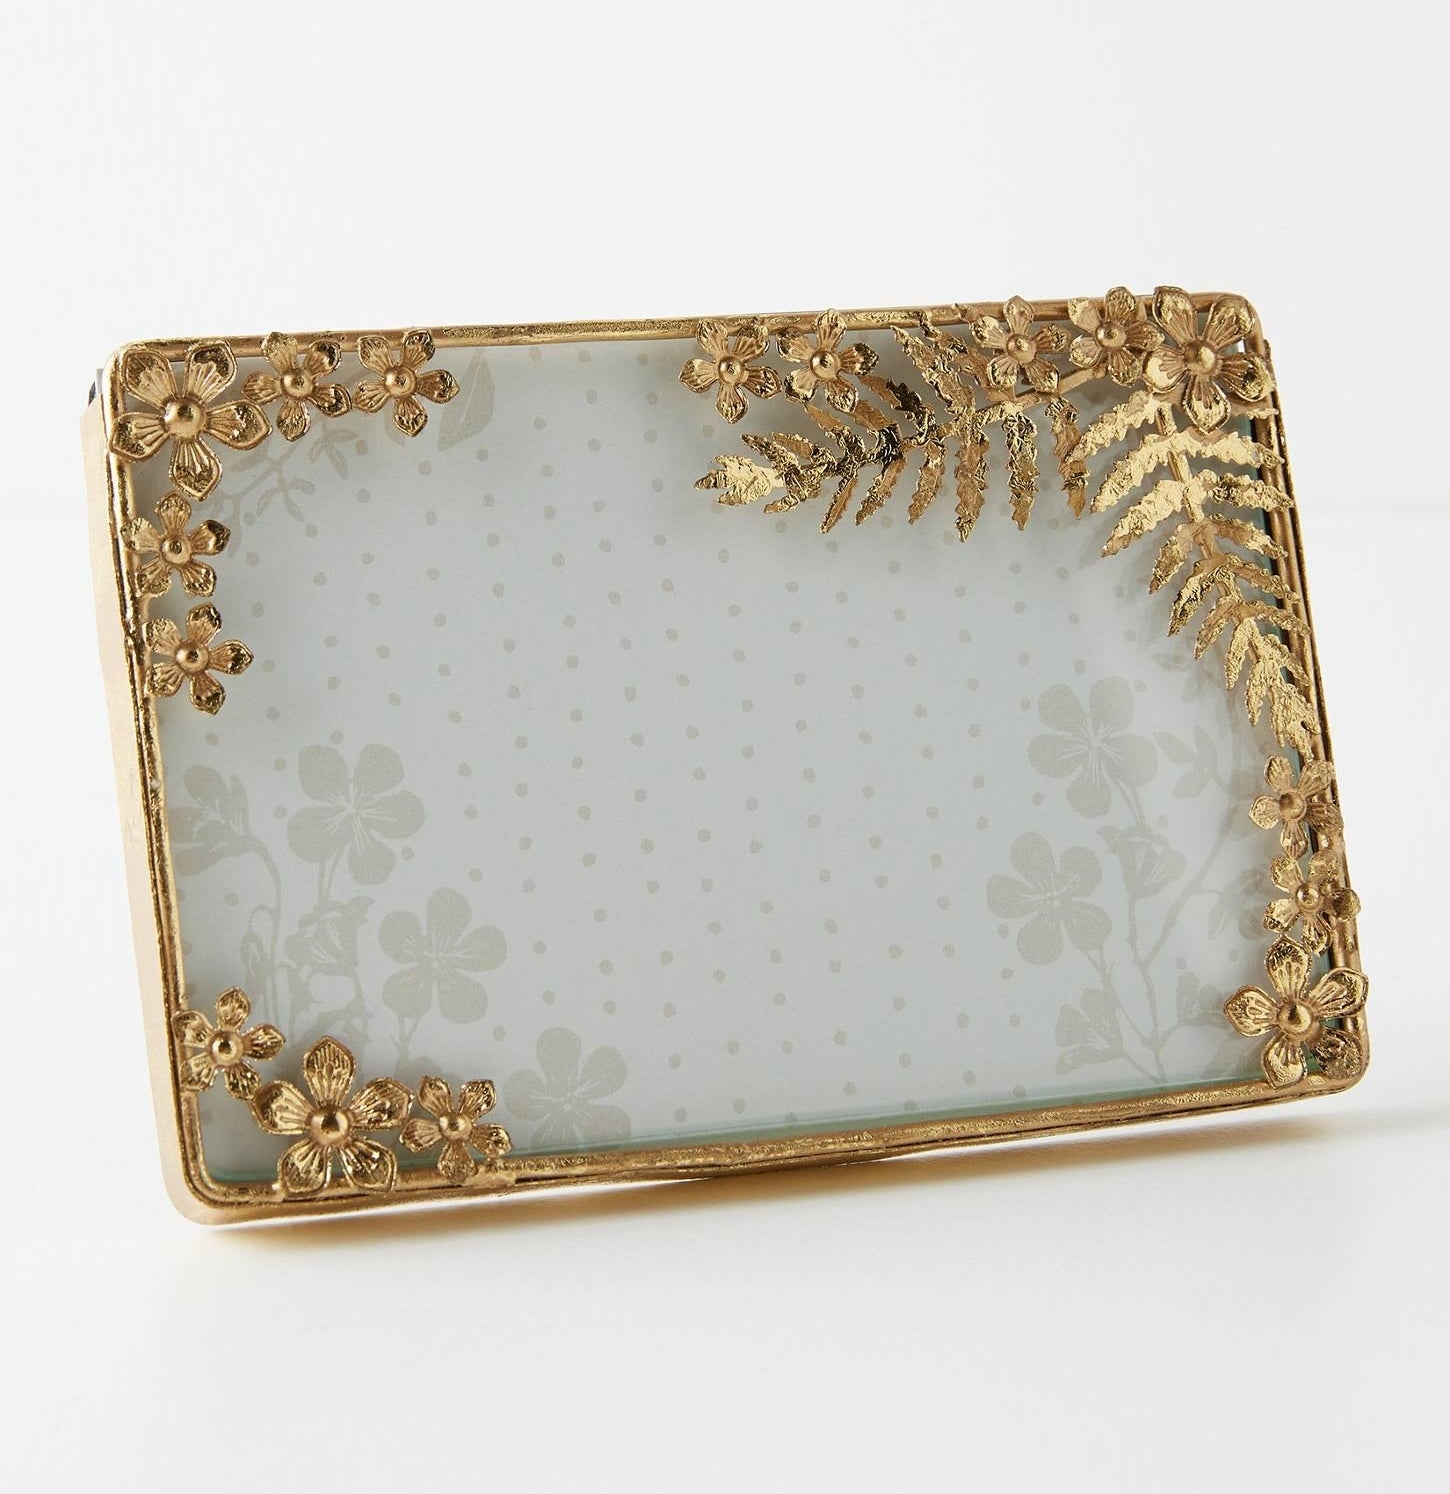 the gold leaf frame